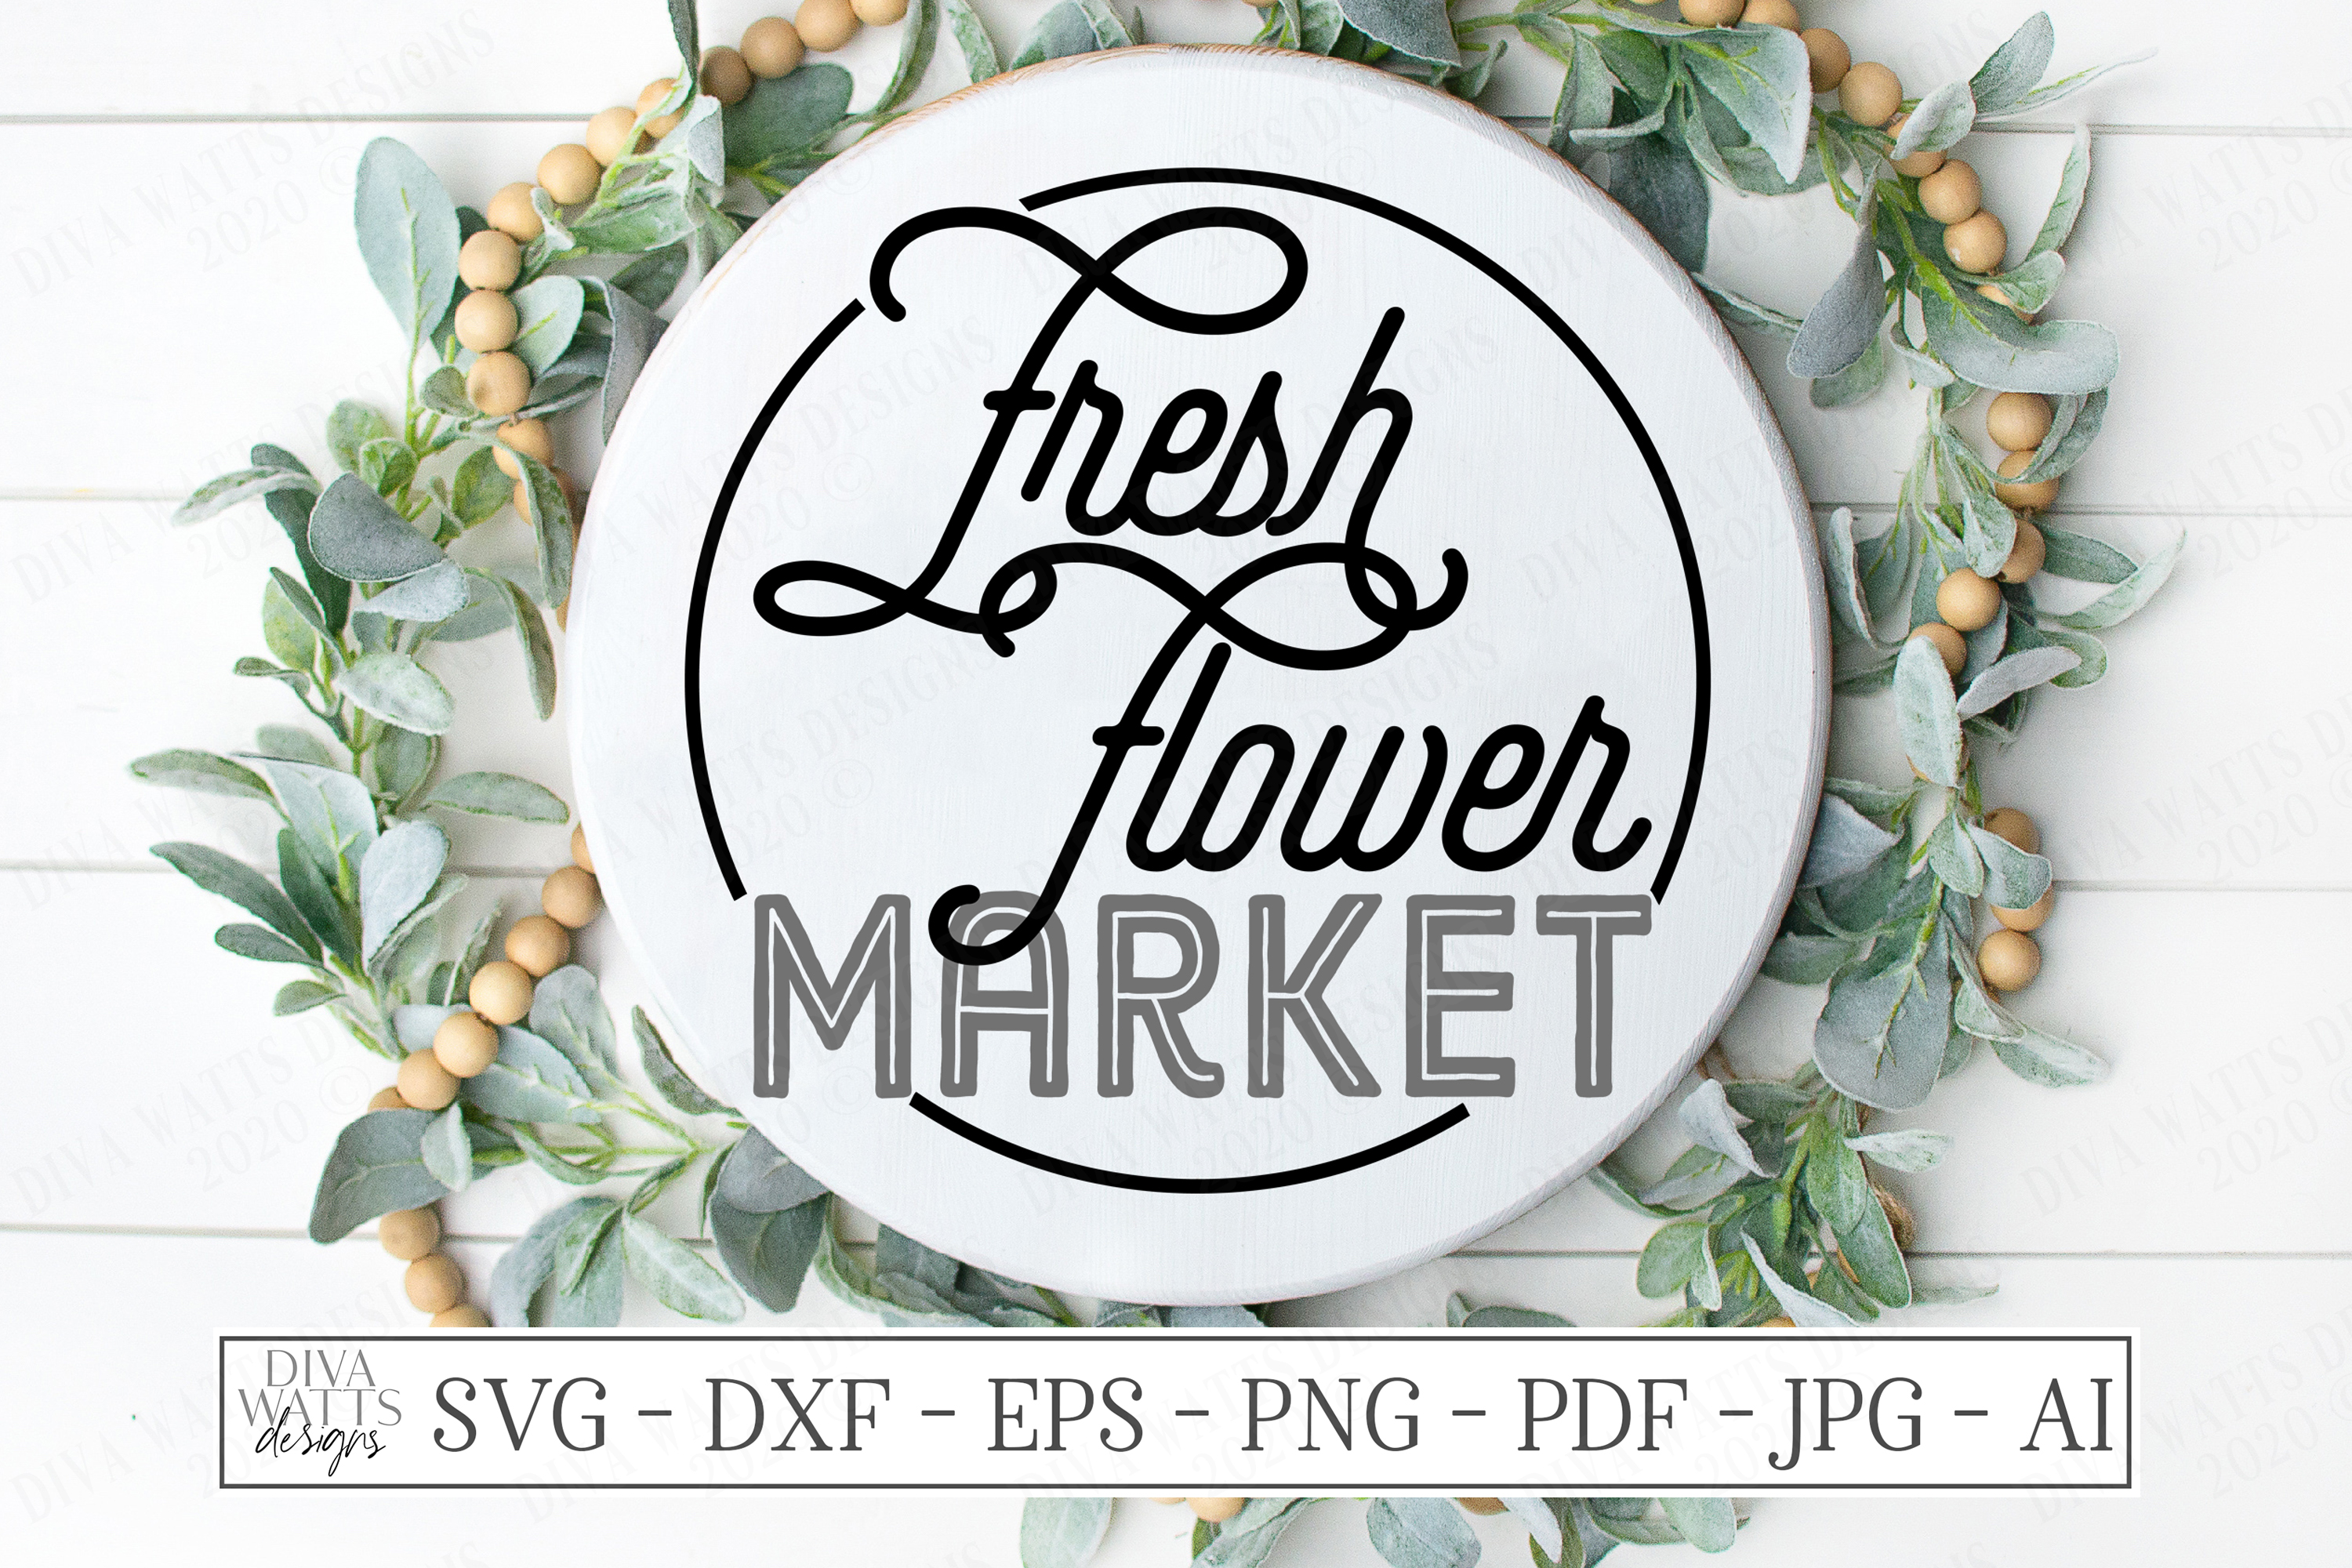 Download Fresh Flower Market - Monoline Retro Vintage Sign SVG DXF